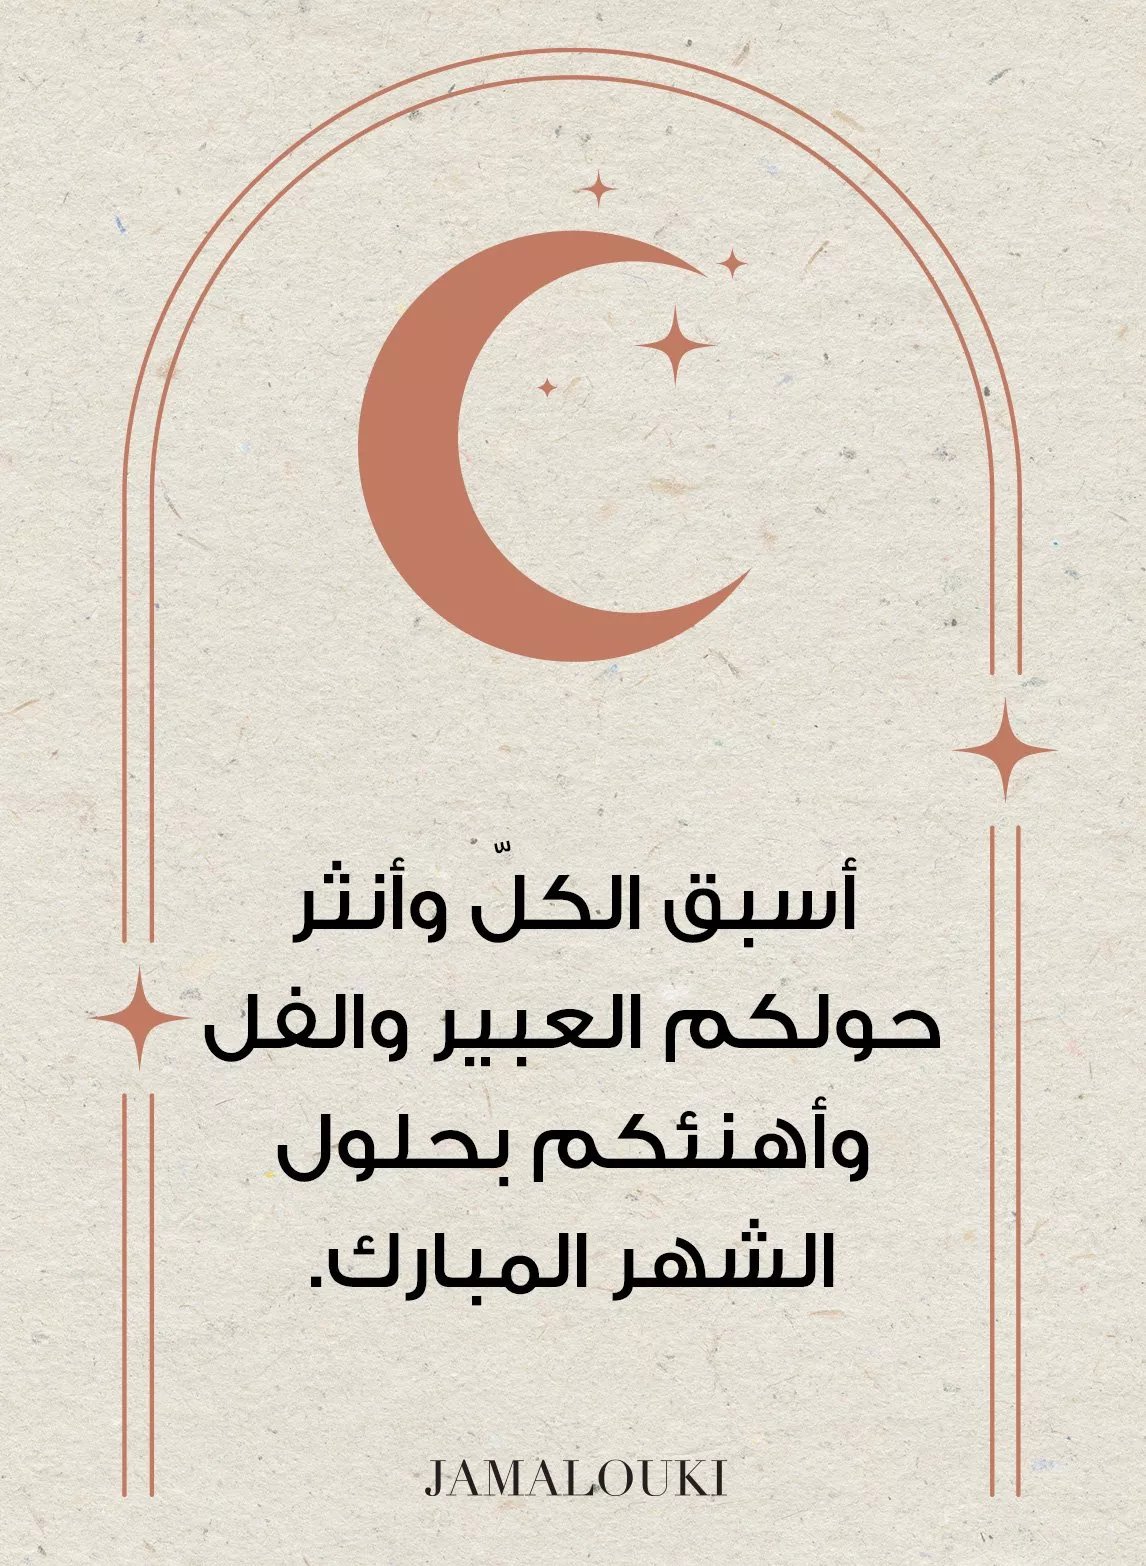 أجمل عبارات تهنئة رمضان لتعايدي بها الأشخاص الأحبّ إلى قلبكِ